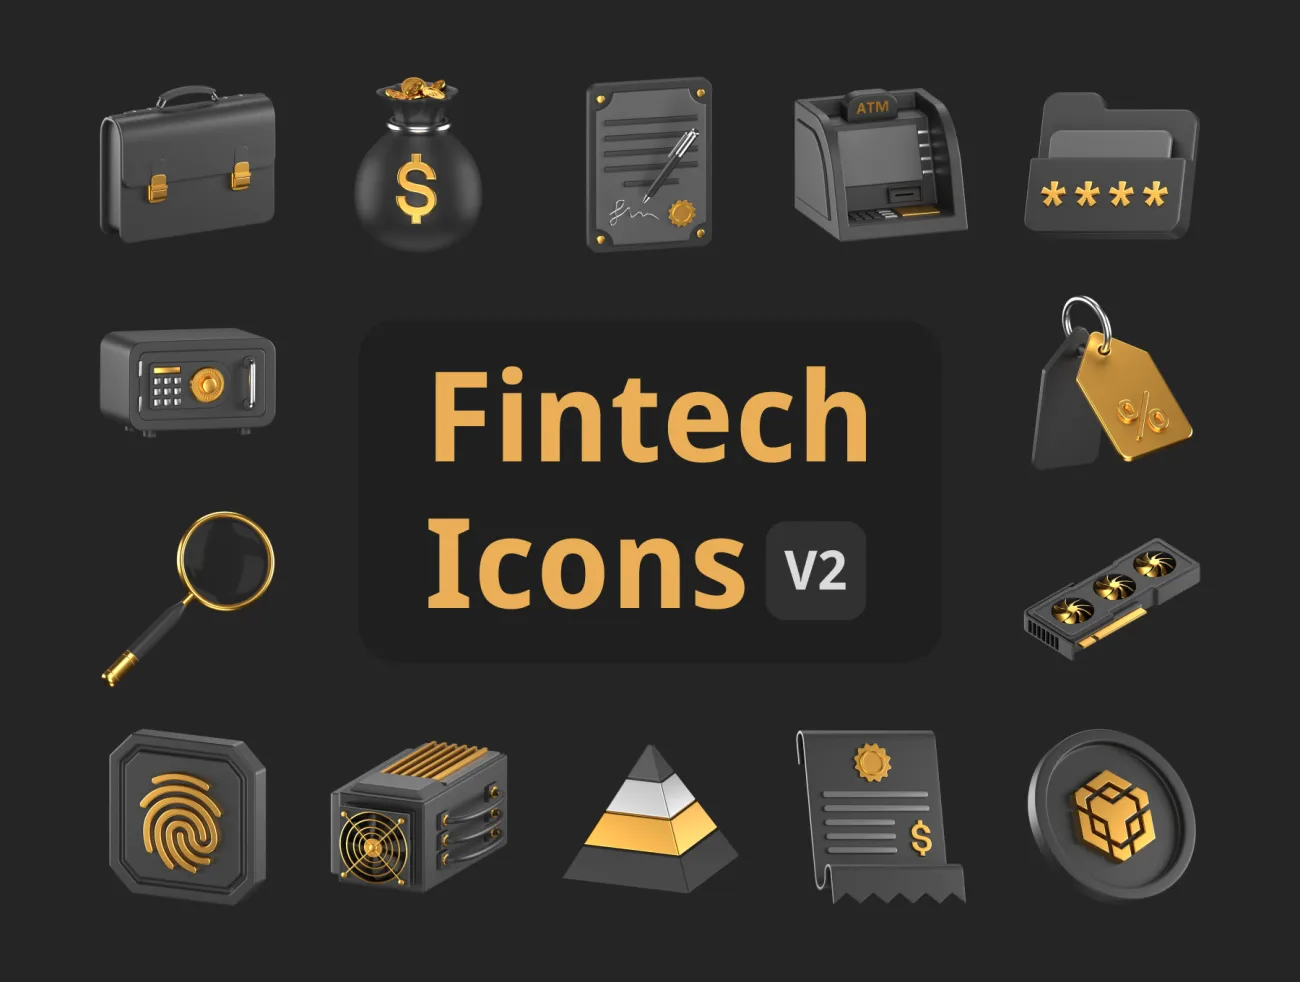 Fintech 金融科技 3D图标包含50个深色和金色主题的3D图标 Fintech 3D Icons Pack Vol. 2 blender格式-3D/图标-到位啦UI